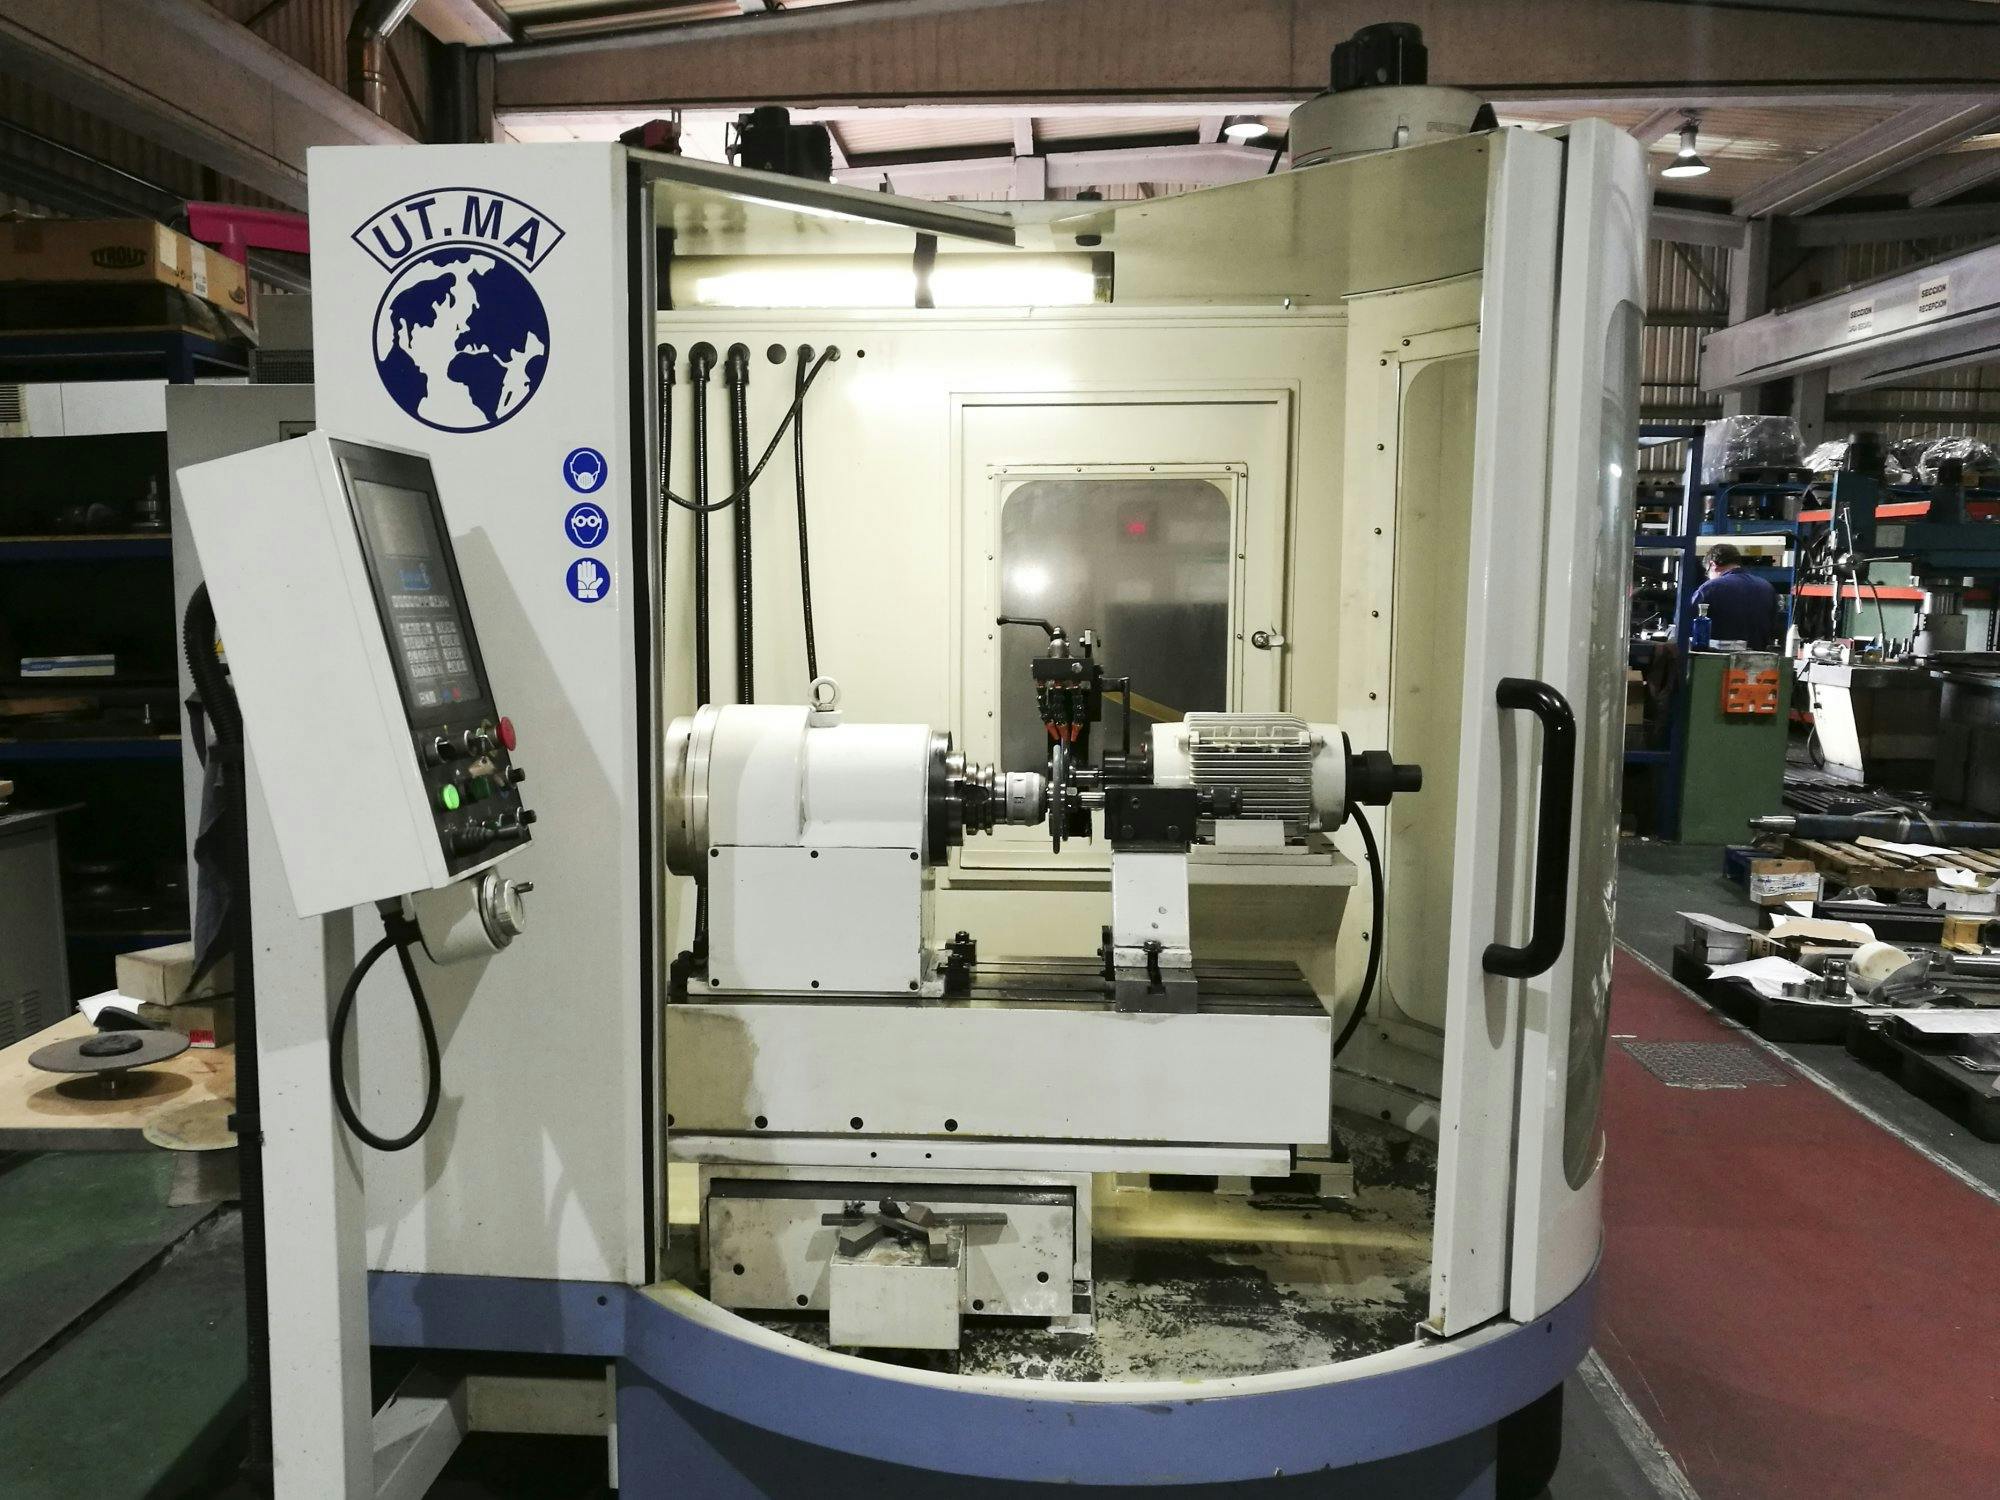 Vista frontal de la máquina UT.MA P20 CNC